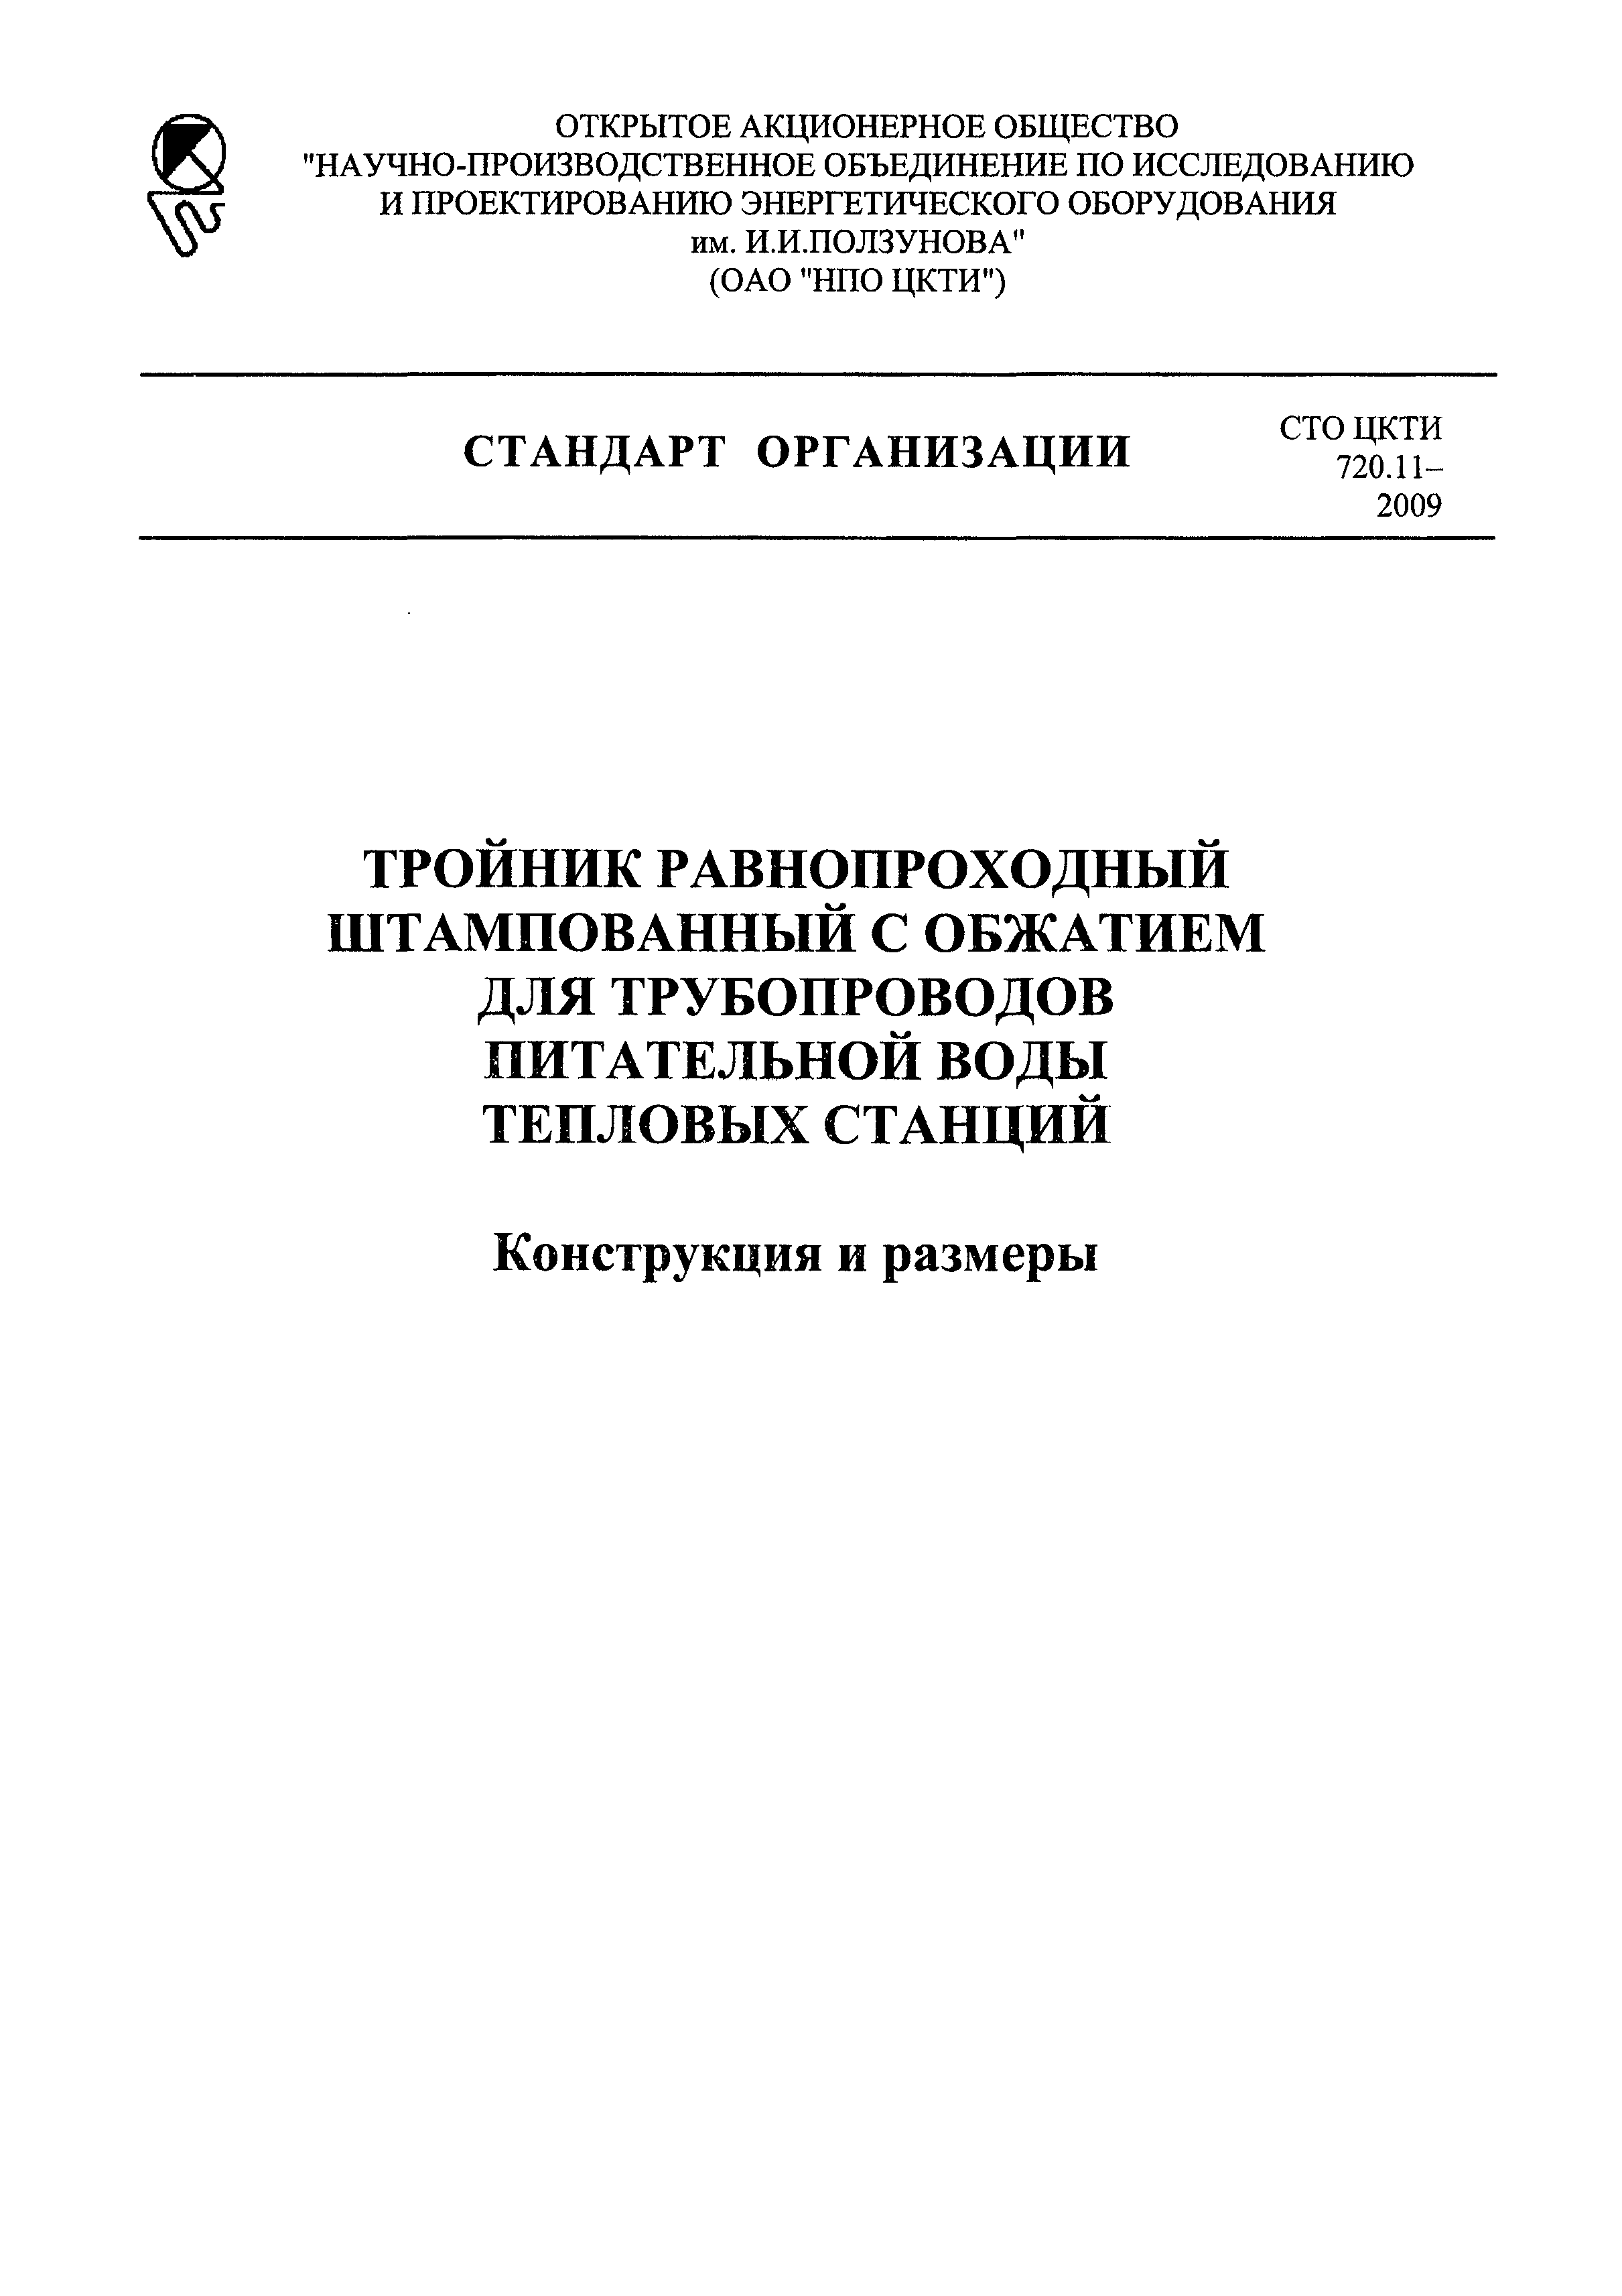 СТО ЦКТИ 720.11-2009